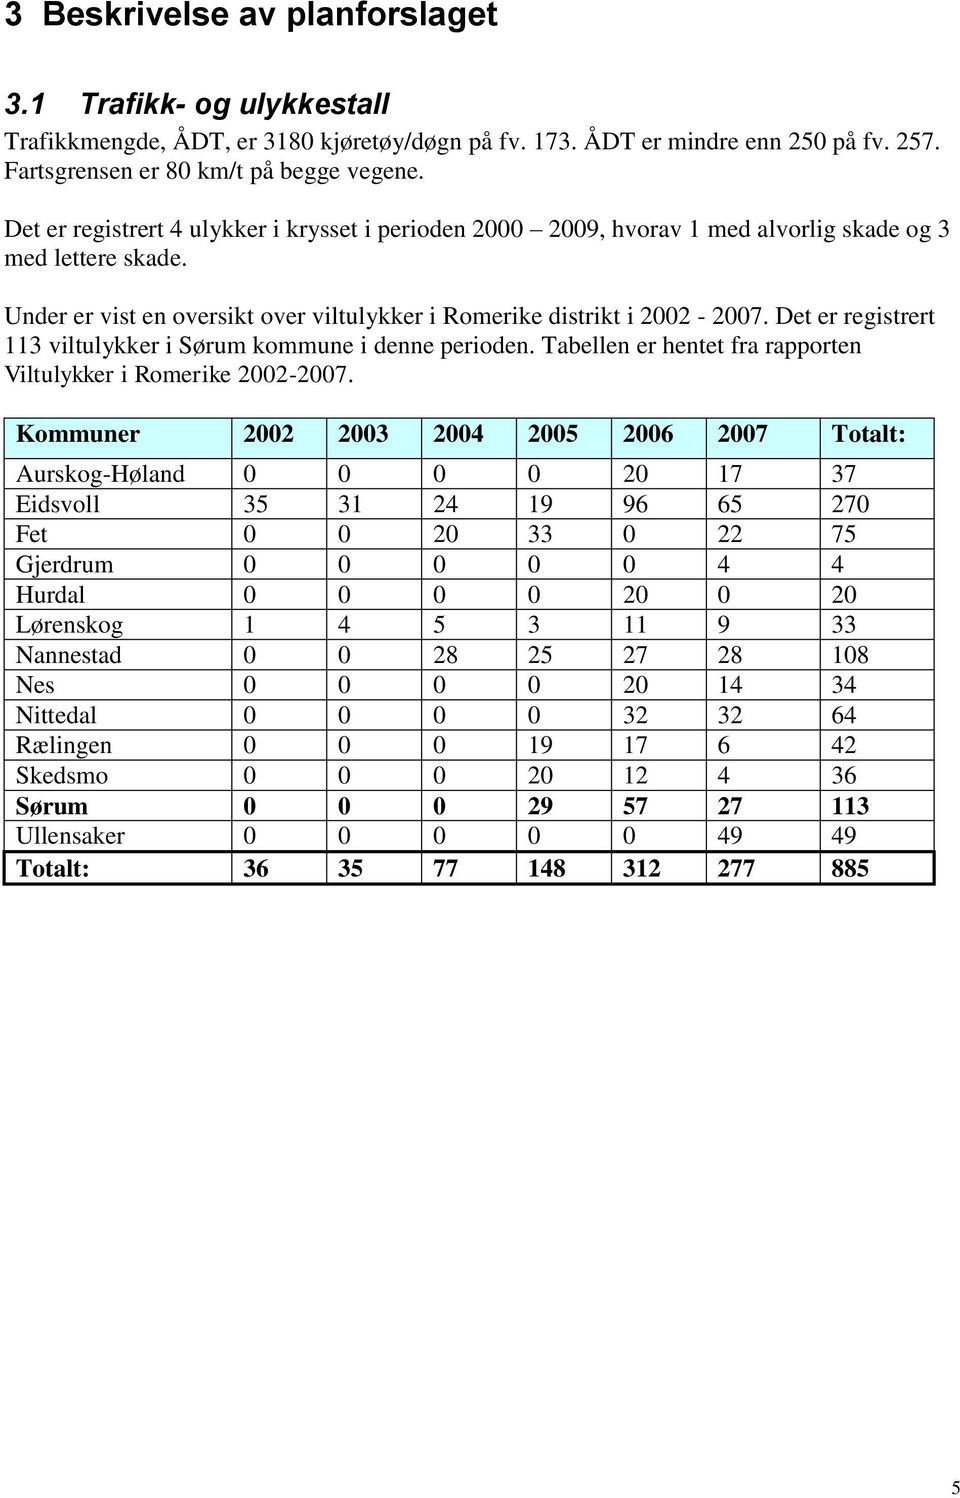 Det er registrert 113 viltulykker i Sørum kommune i denne perioden. Tabellen er hentet fra rapporten Viltulykker i Romerike 2002-2007.